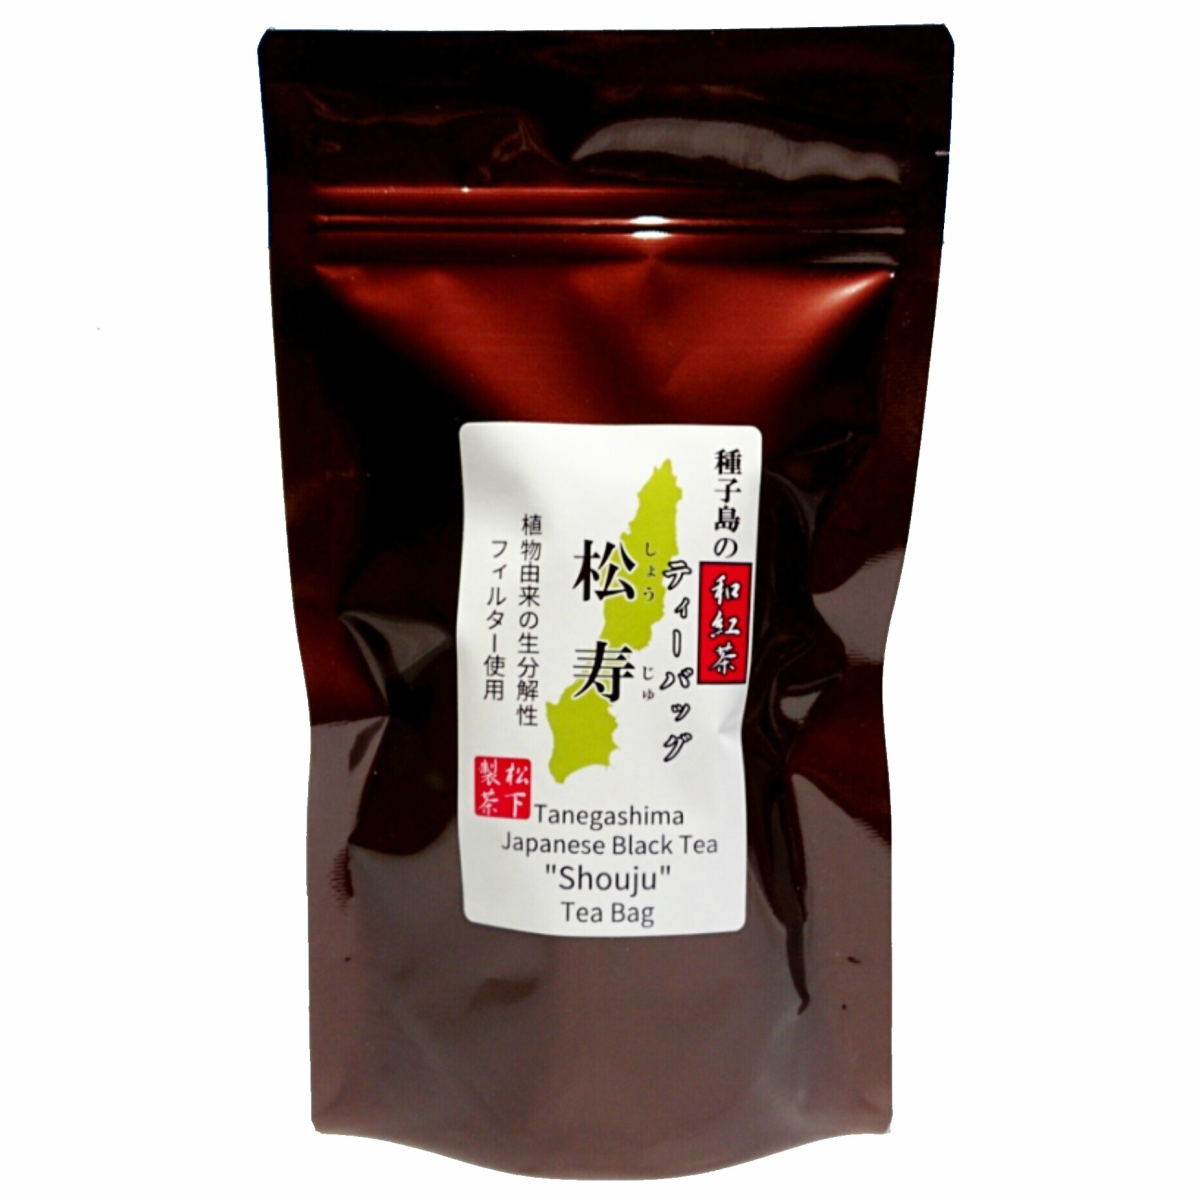 【希少品種】種子島の和紅茶ティーバッグ『松寿(しょうじゅ)』 40g(2.5g×16袋入り) 松下製茶